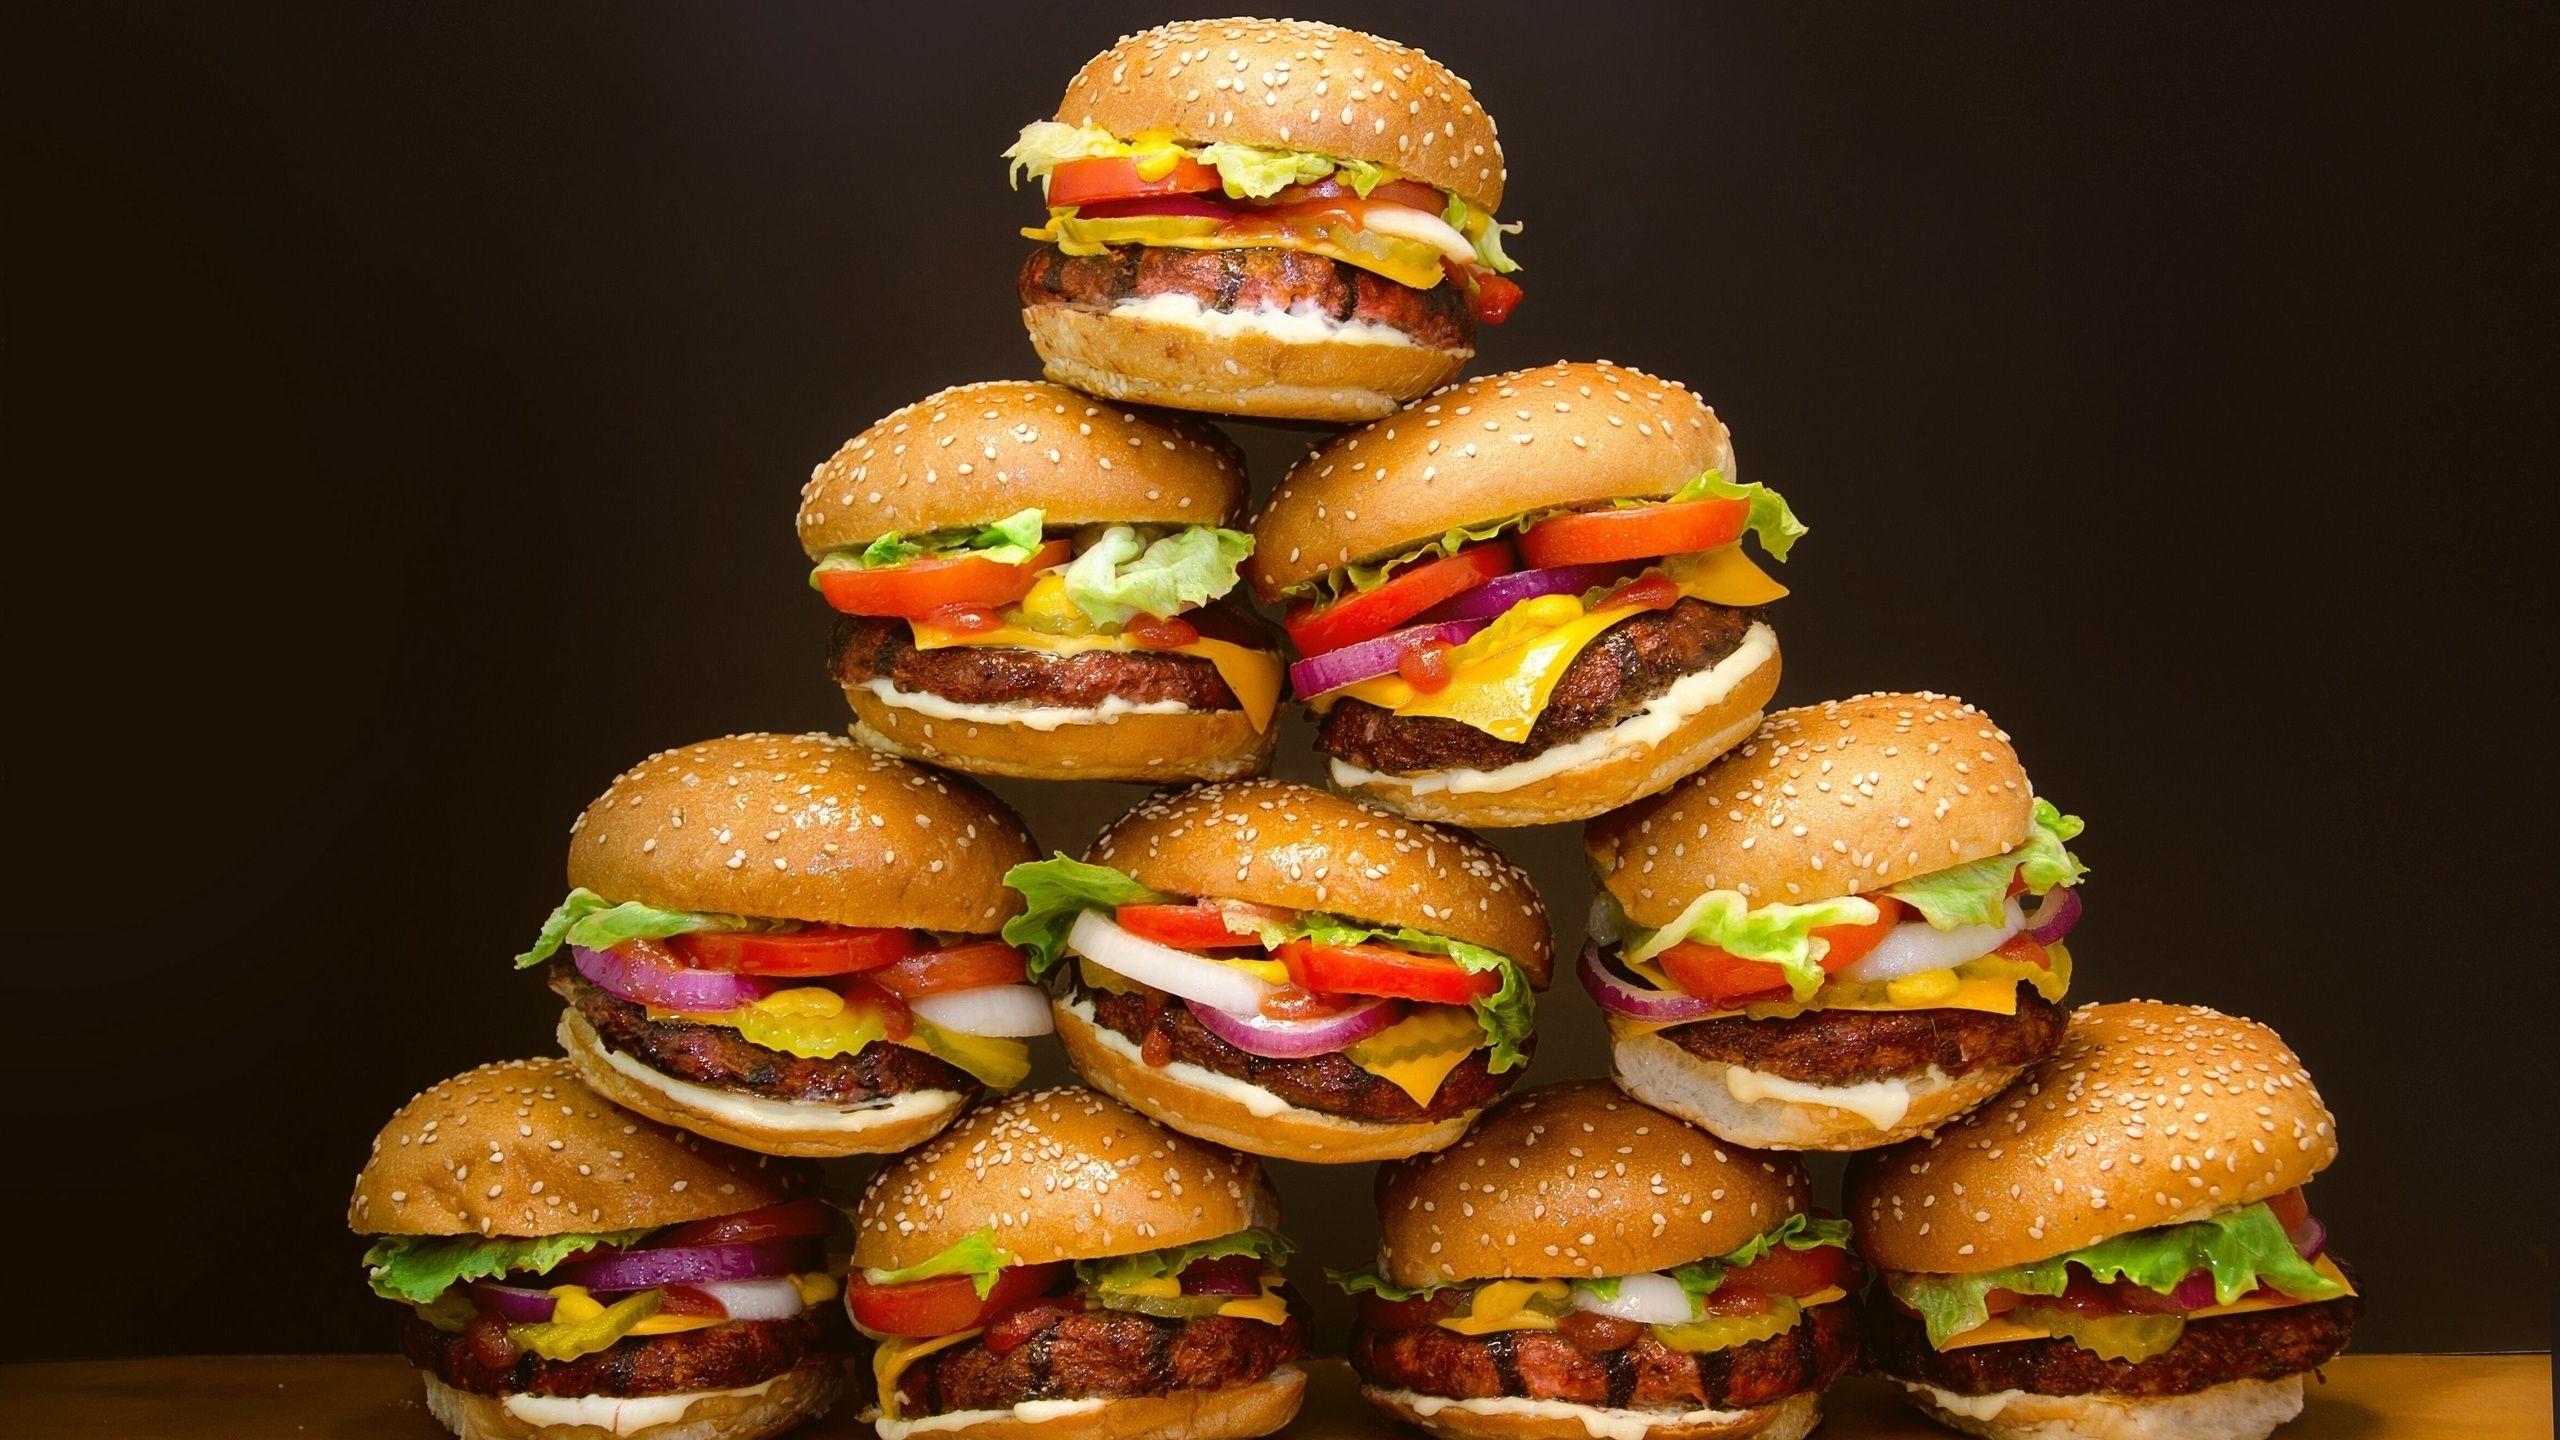 Download 2560x1440 Hamburgers wallpaper